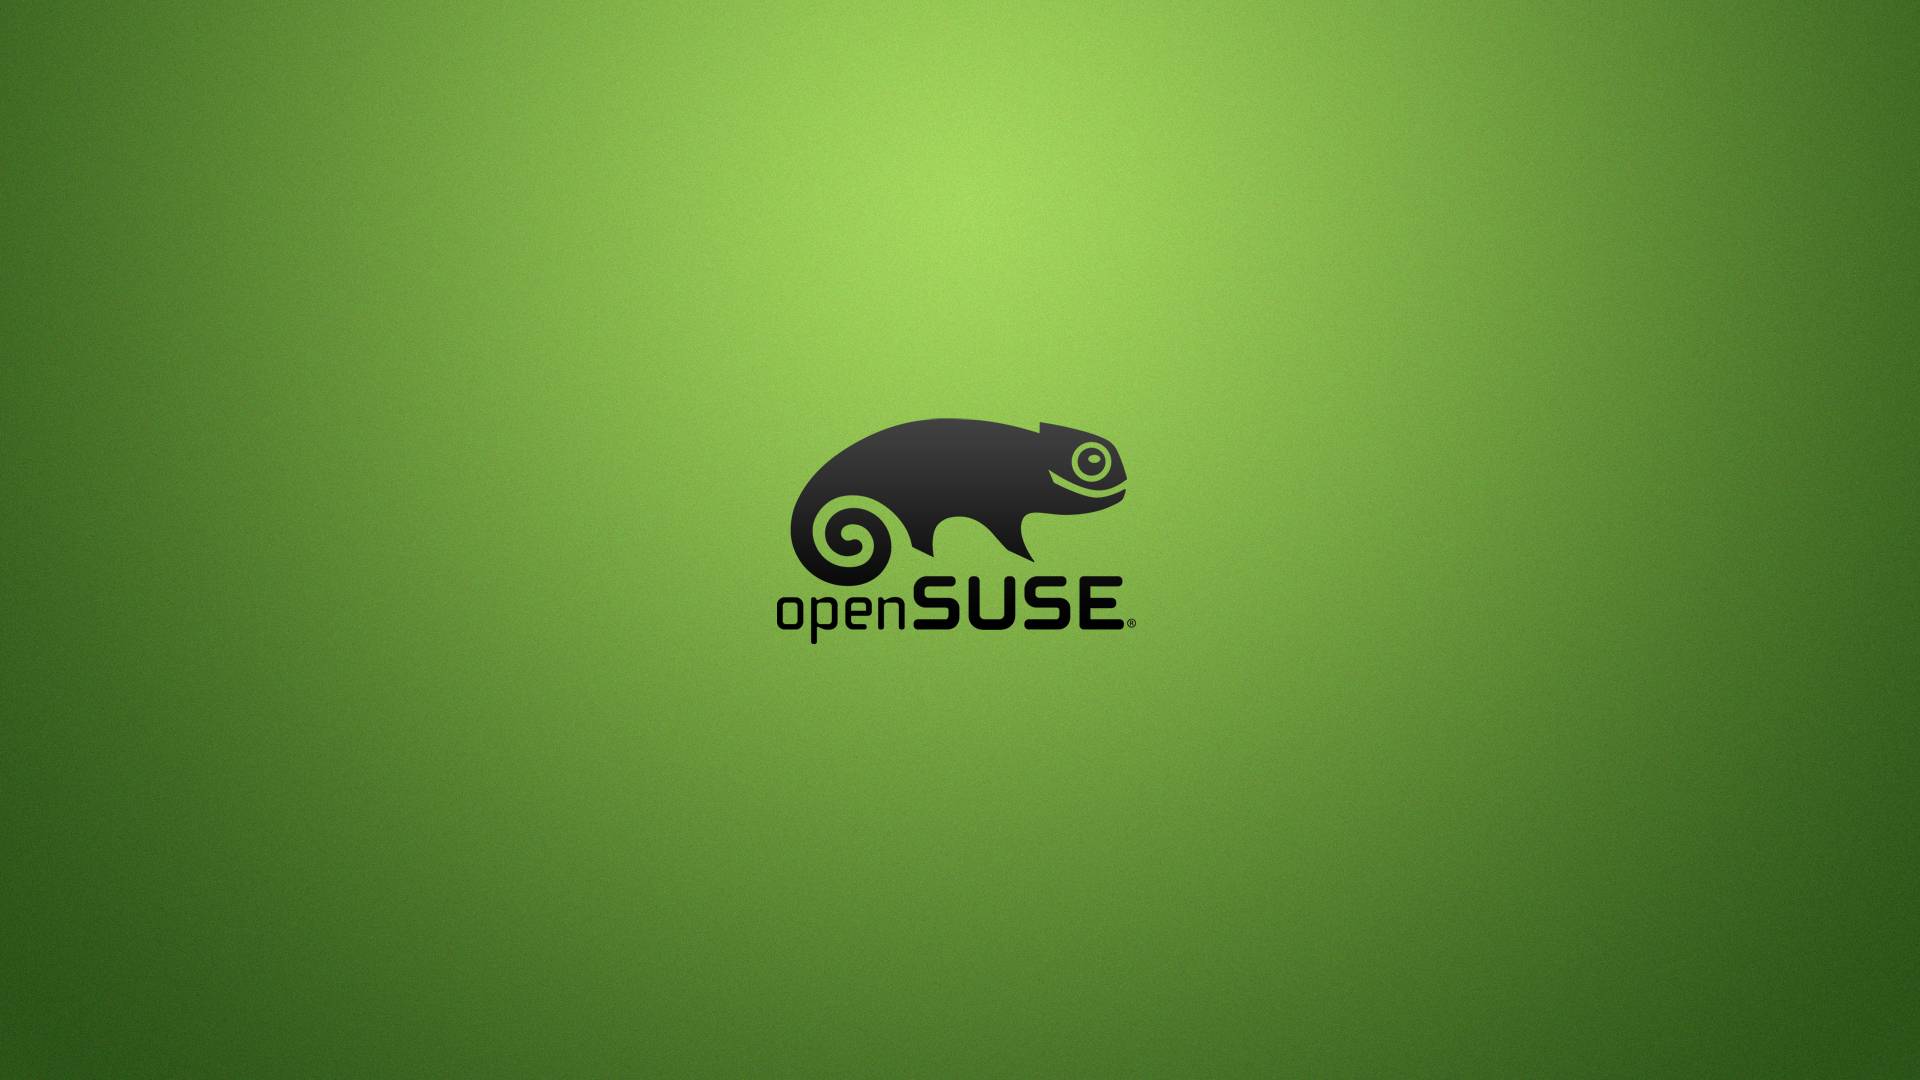 Il progetto openSUSE indice un concorso per cambiare logo del camaleonte alle quattro versioni della sua distribuzione